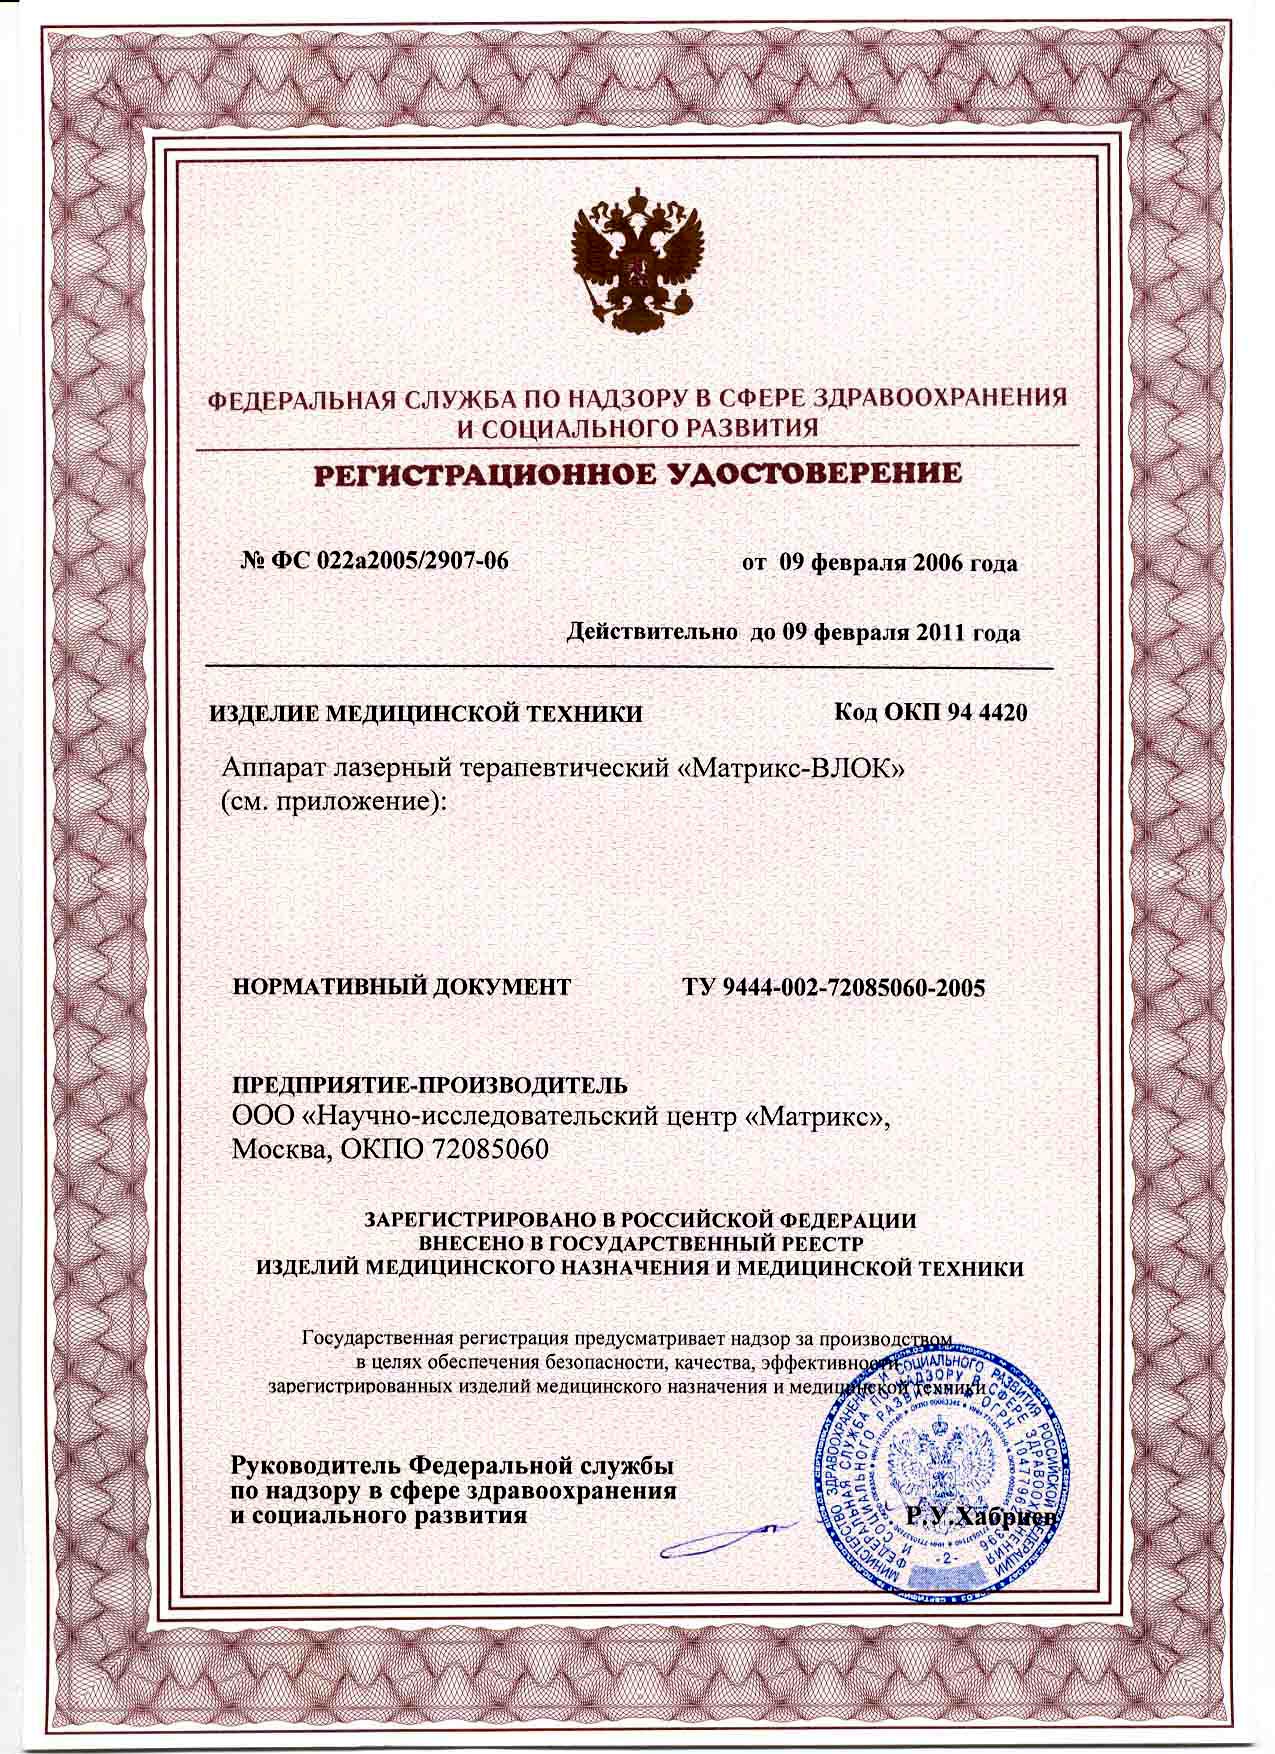 сертификат Матрикс-ВЛОК - аппарат лазерный терапевтический